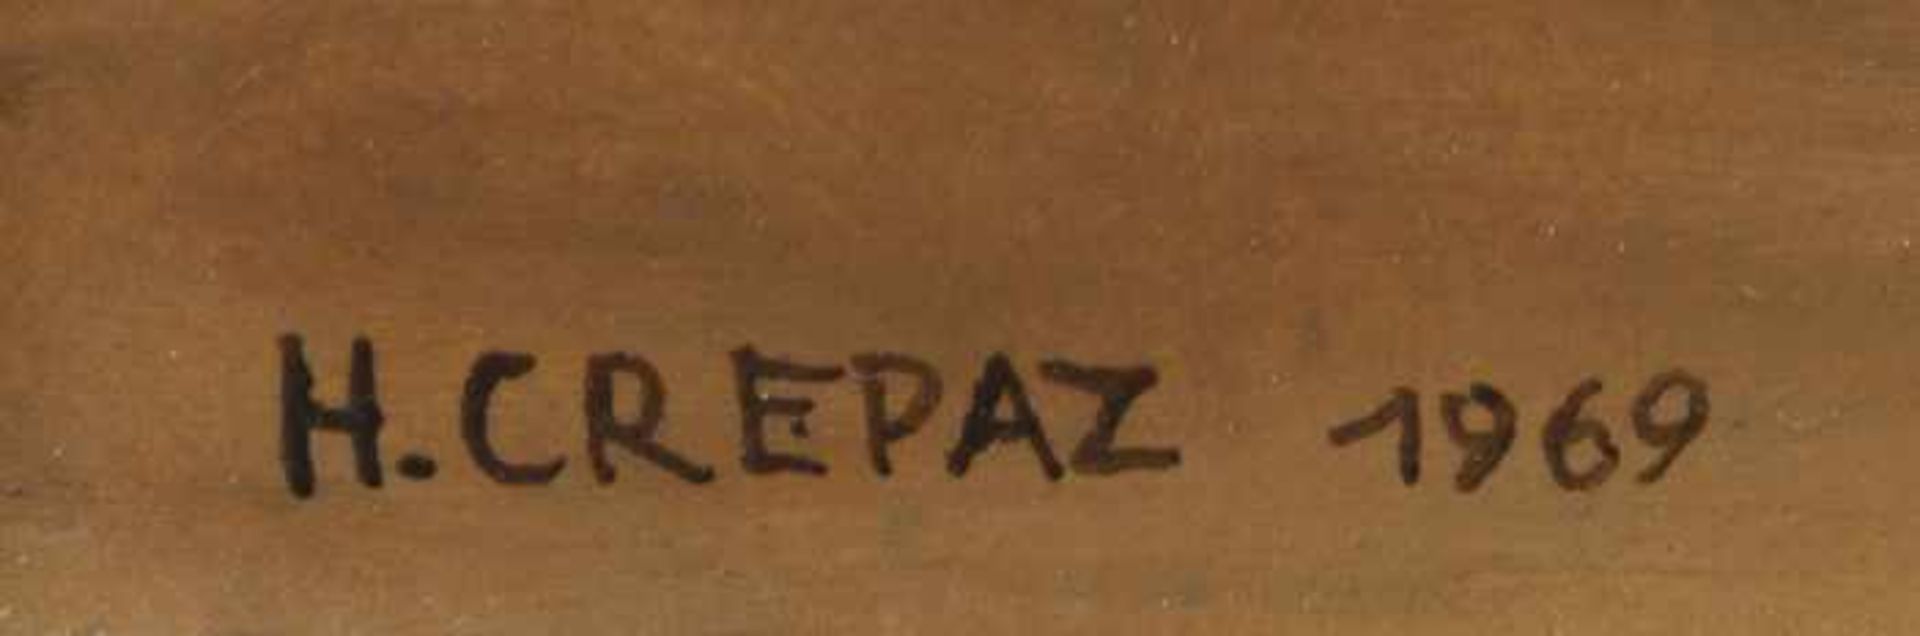 Crepaz, Hans Ohne Titel, 1969 Öl auf Holz Signiert und datiert links unten 20 x 25 cm gerahmt - Image 4 of 4